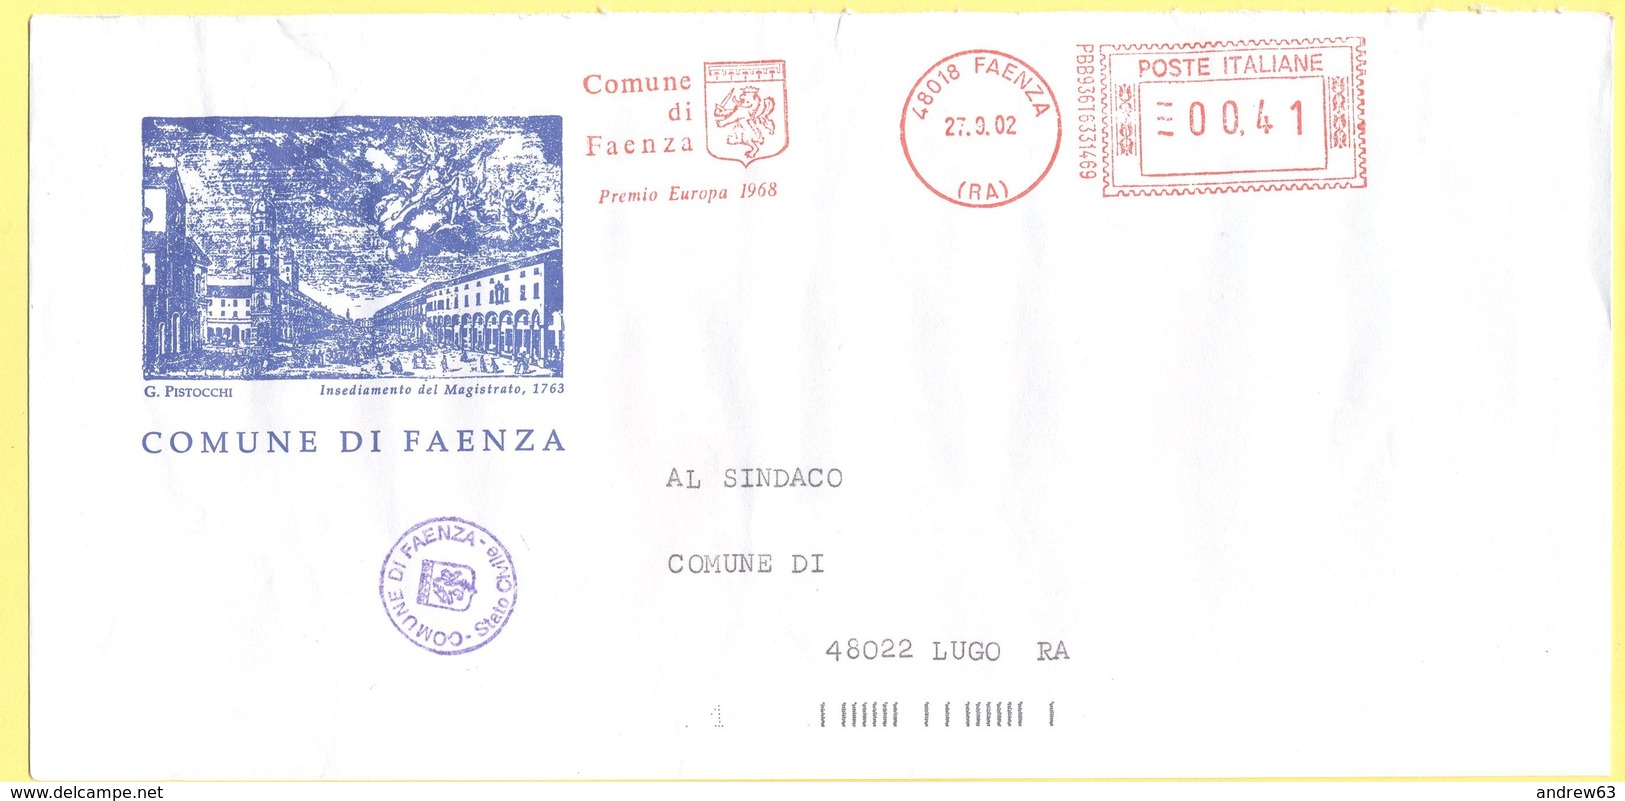 ITALIA - ITALY - ITALIE - 2002 - 00,41 EMA, Red Cancel - Comune Di Faenza - Viaggiata Da Faenza Per Lugo - Macchine Per Obliterare (EMA)